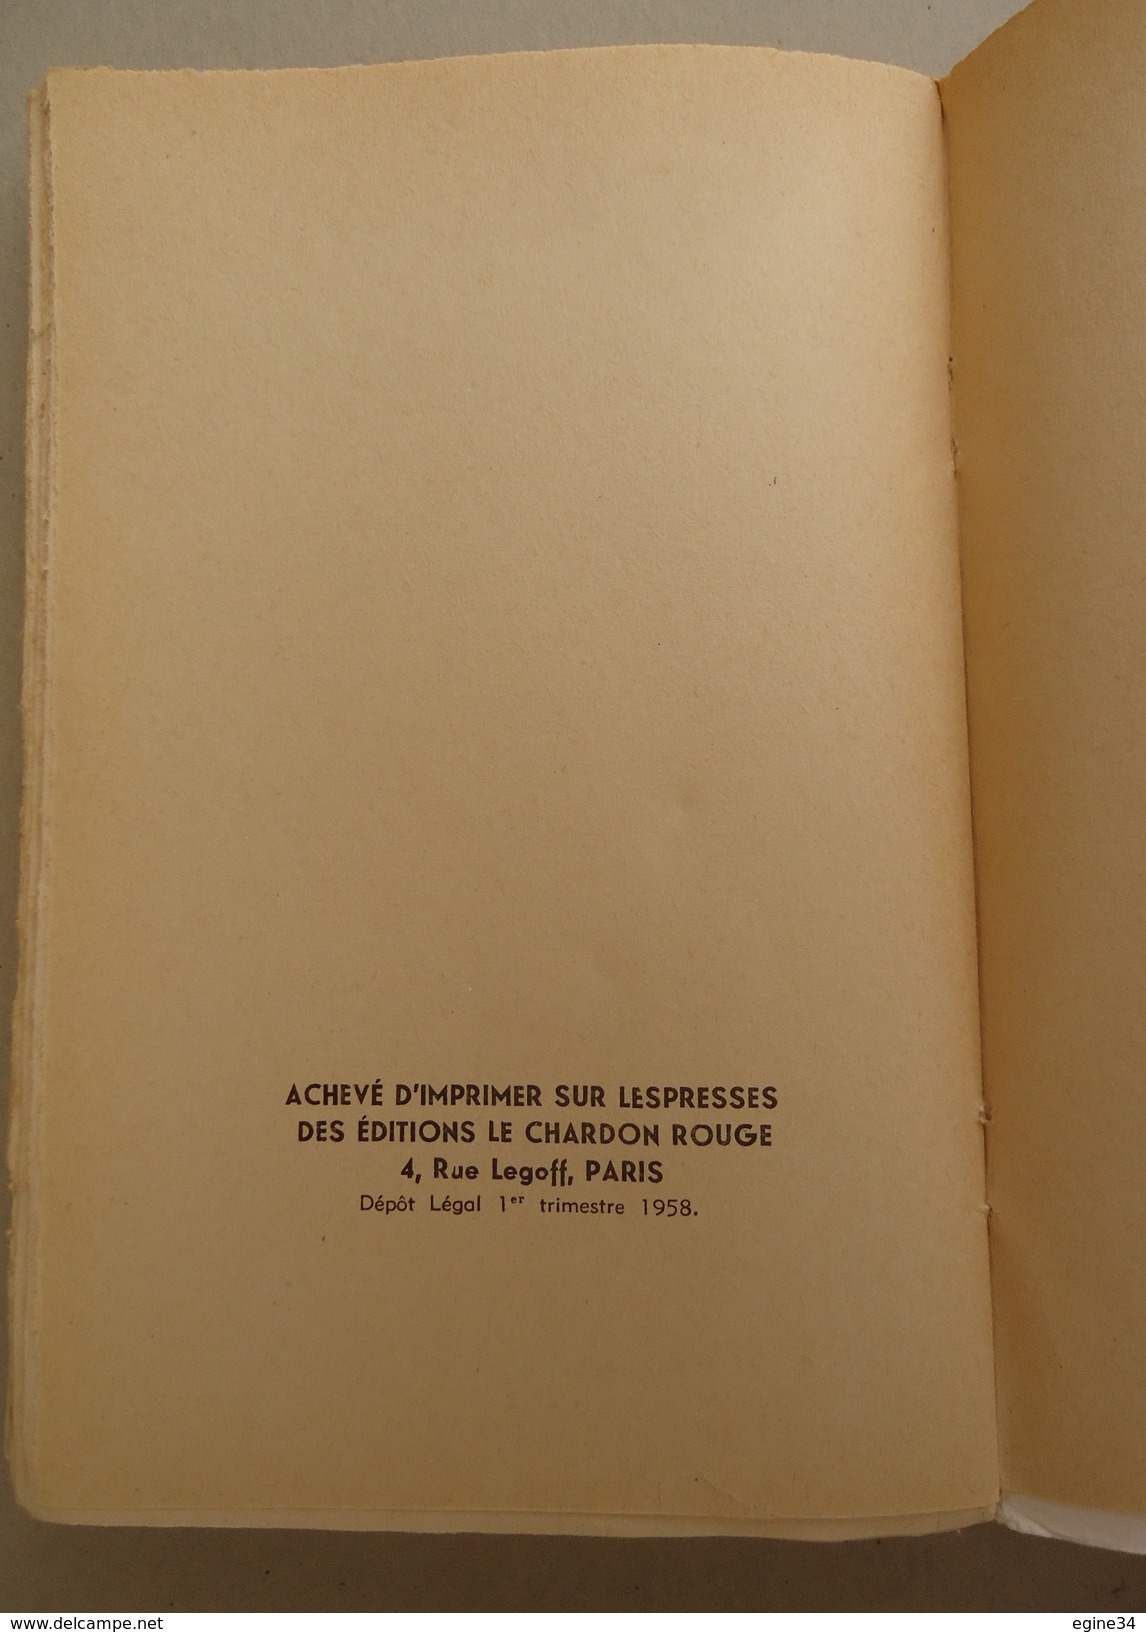 Editions Le Chardon Rouge - André Helena - Edition Très Spéciale - 1958 - Auteurs Classiques